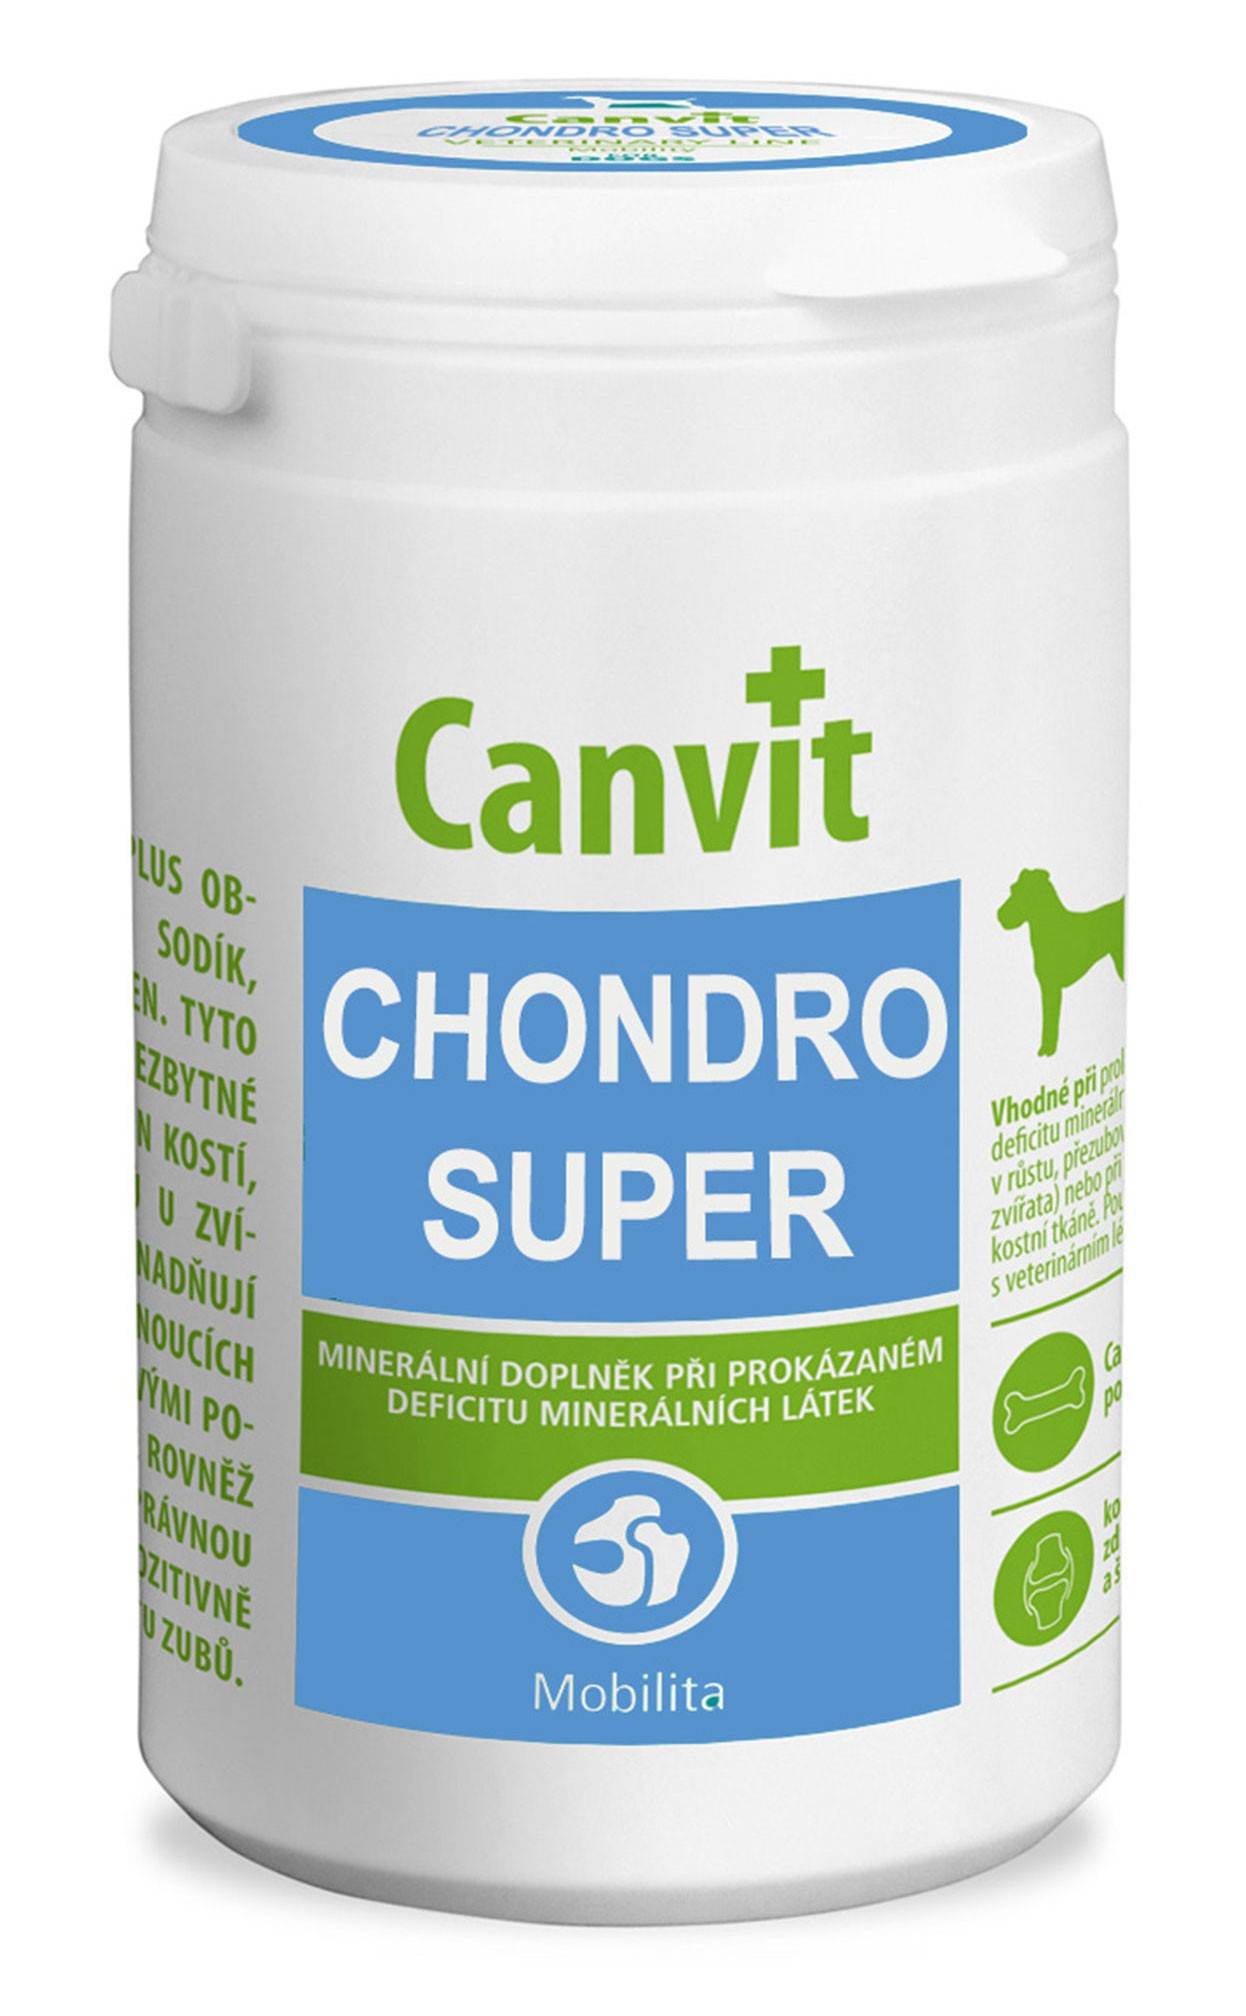 CANVIT  CHONDRO SUPER – комплекс витаминов и минералов для здоровья суставов для собак больших пород